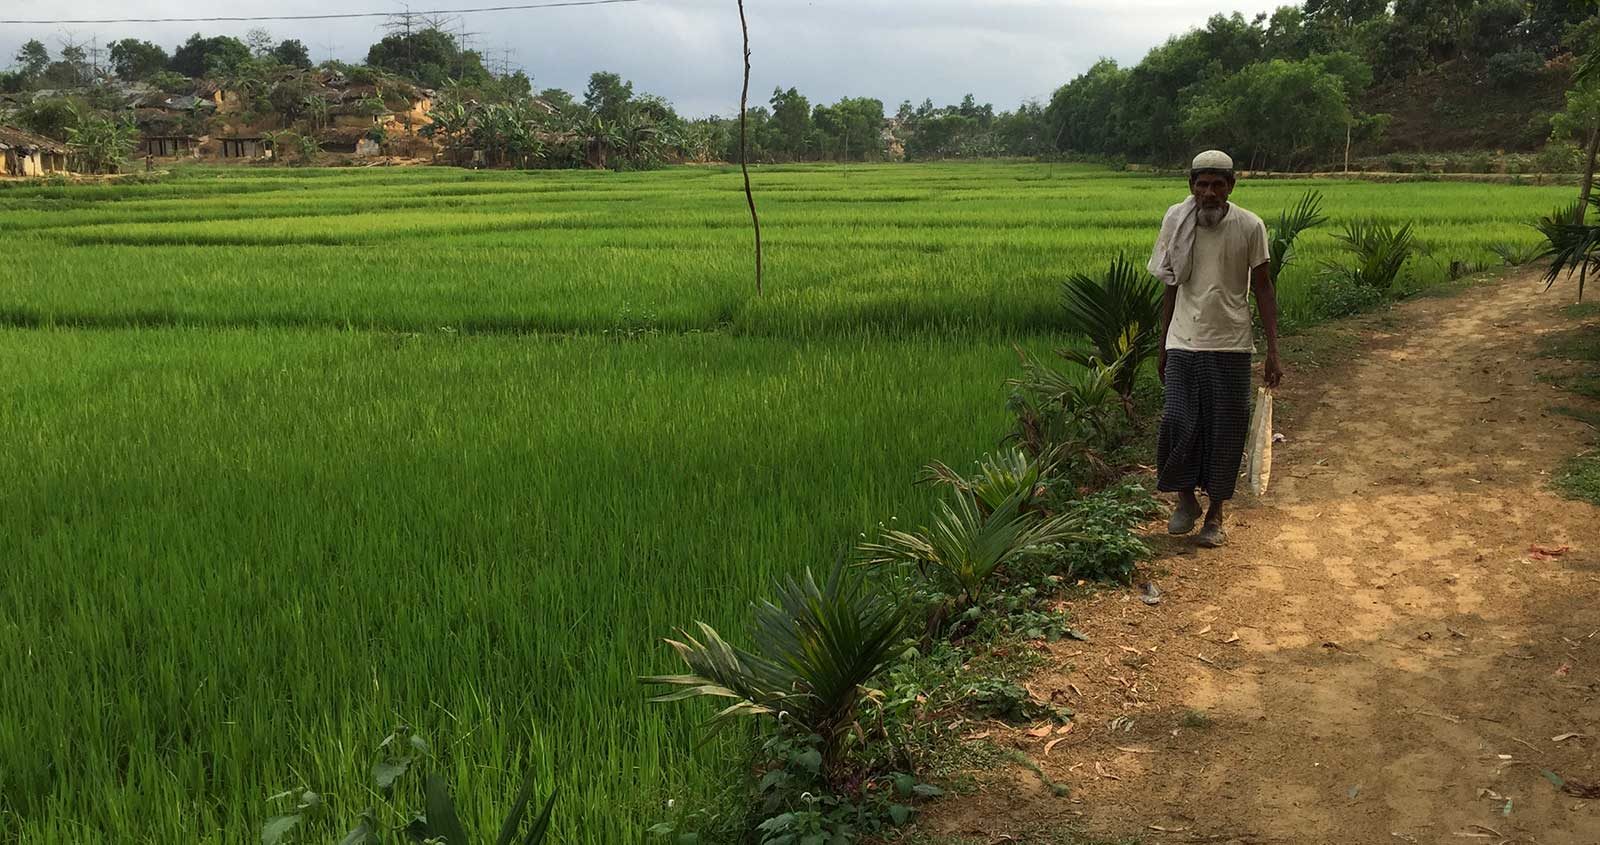 A Rohingya man walking along a path